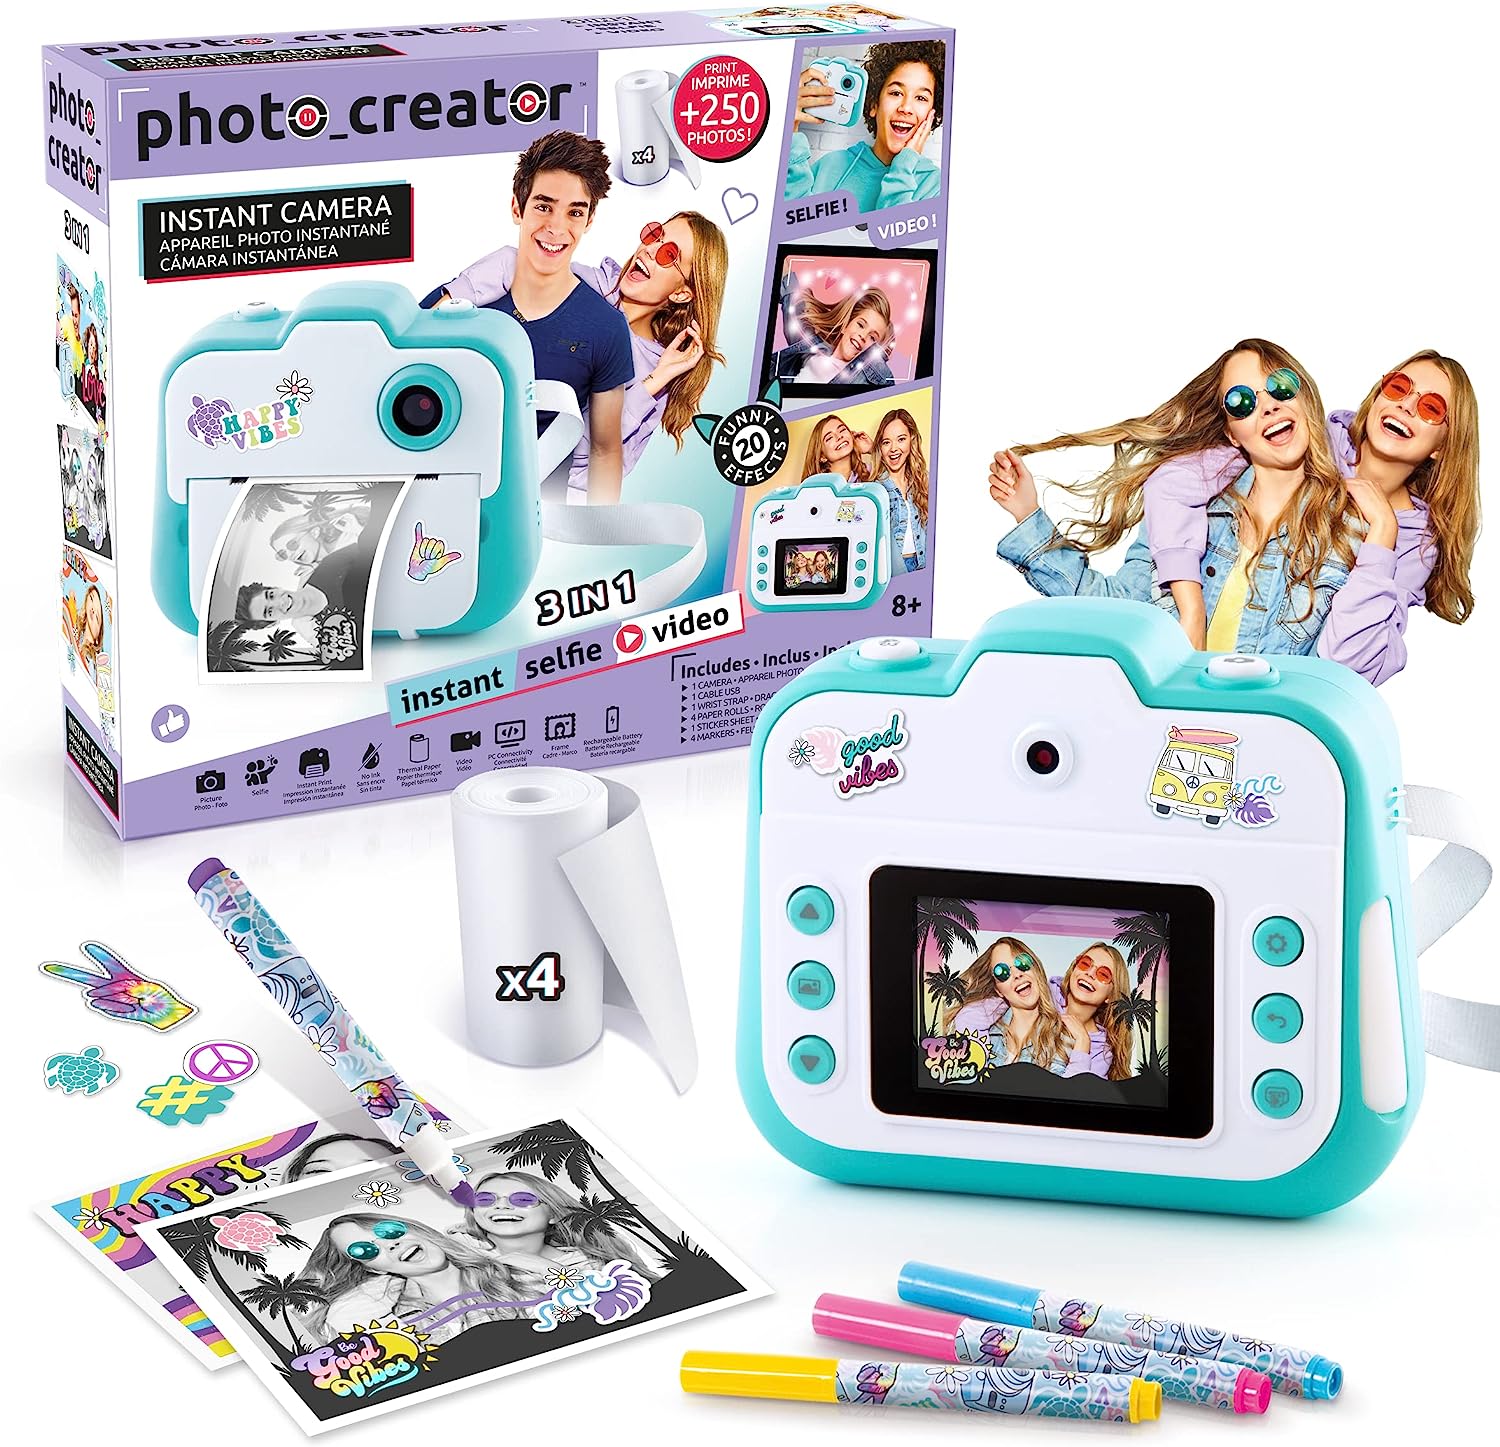 deal - Canal Toys - Appareil Photo à Impression Instantanée Photo Creator,  Selfie et Video - Papier Thermique 56,90€ au lieu de 76,99€ sur